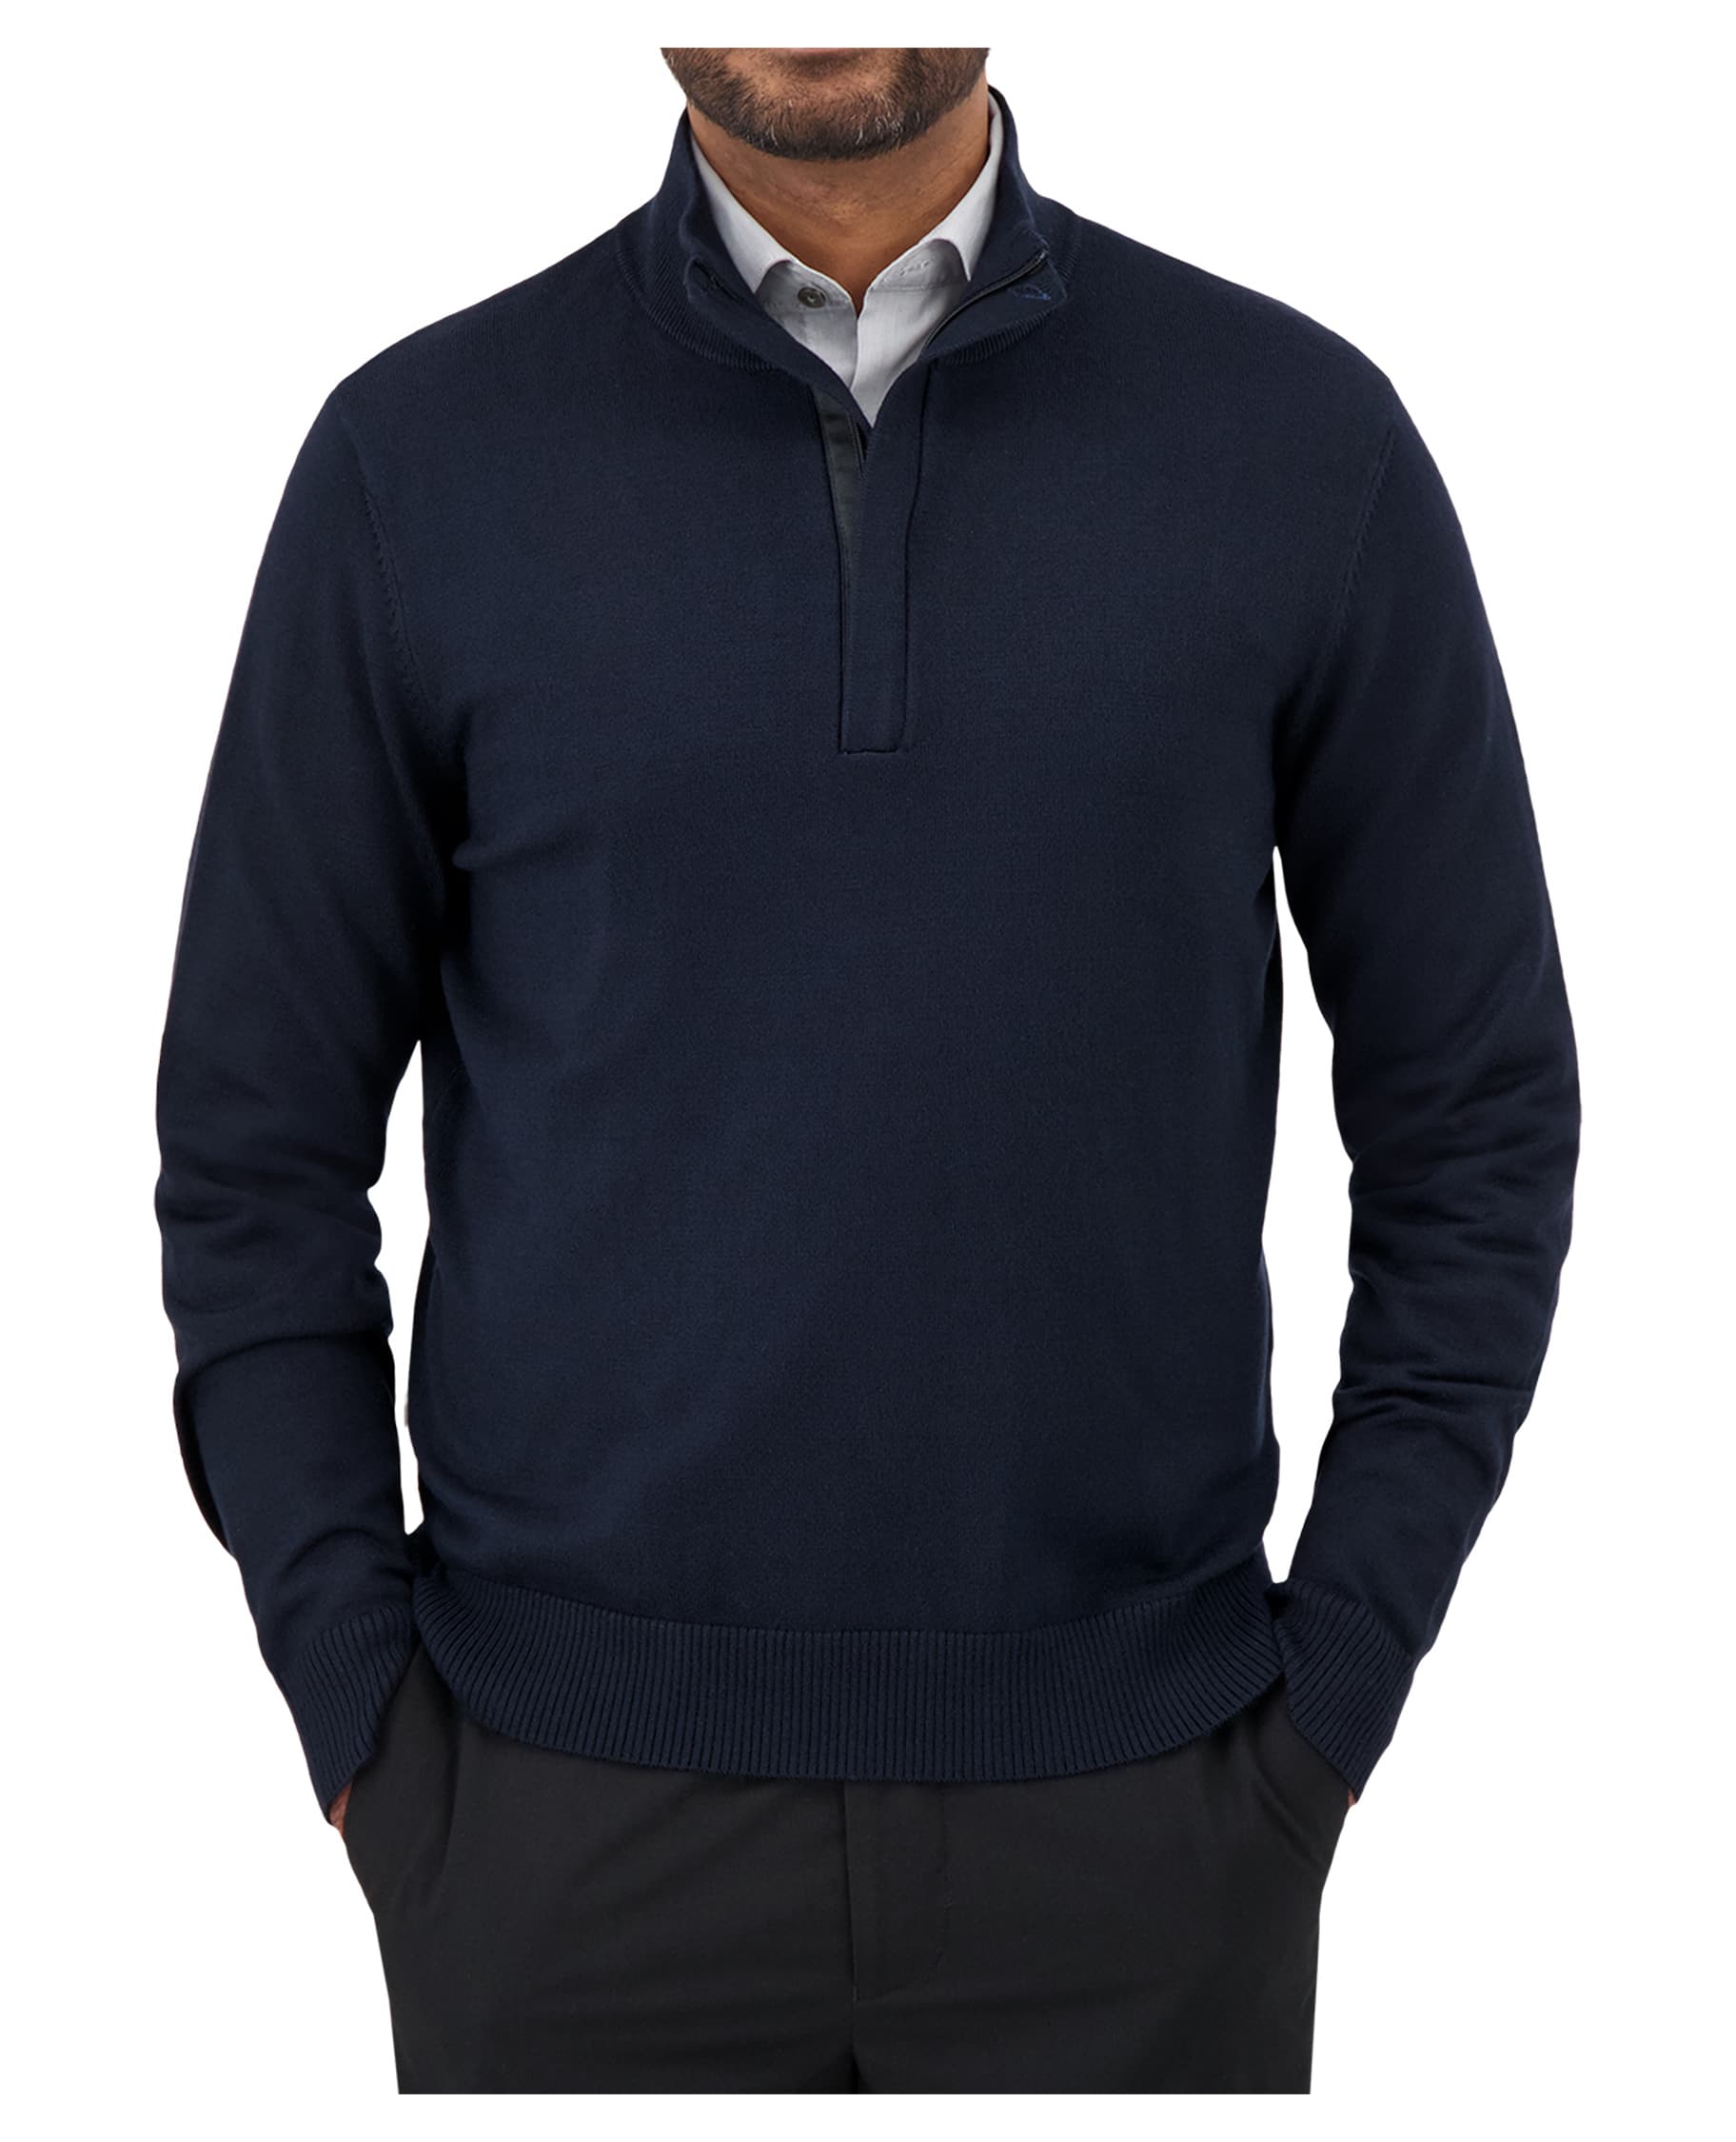 navy quarter zip mock neck sweater